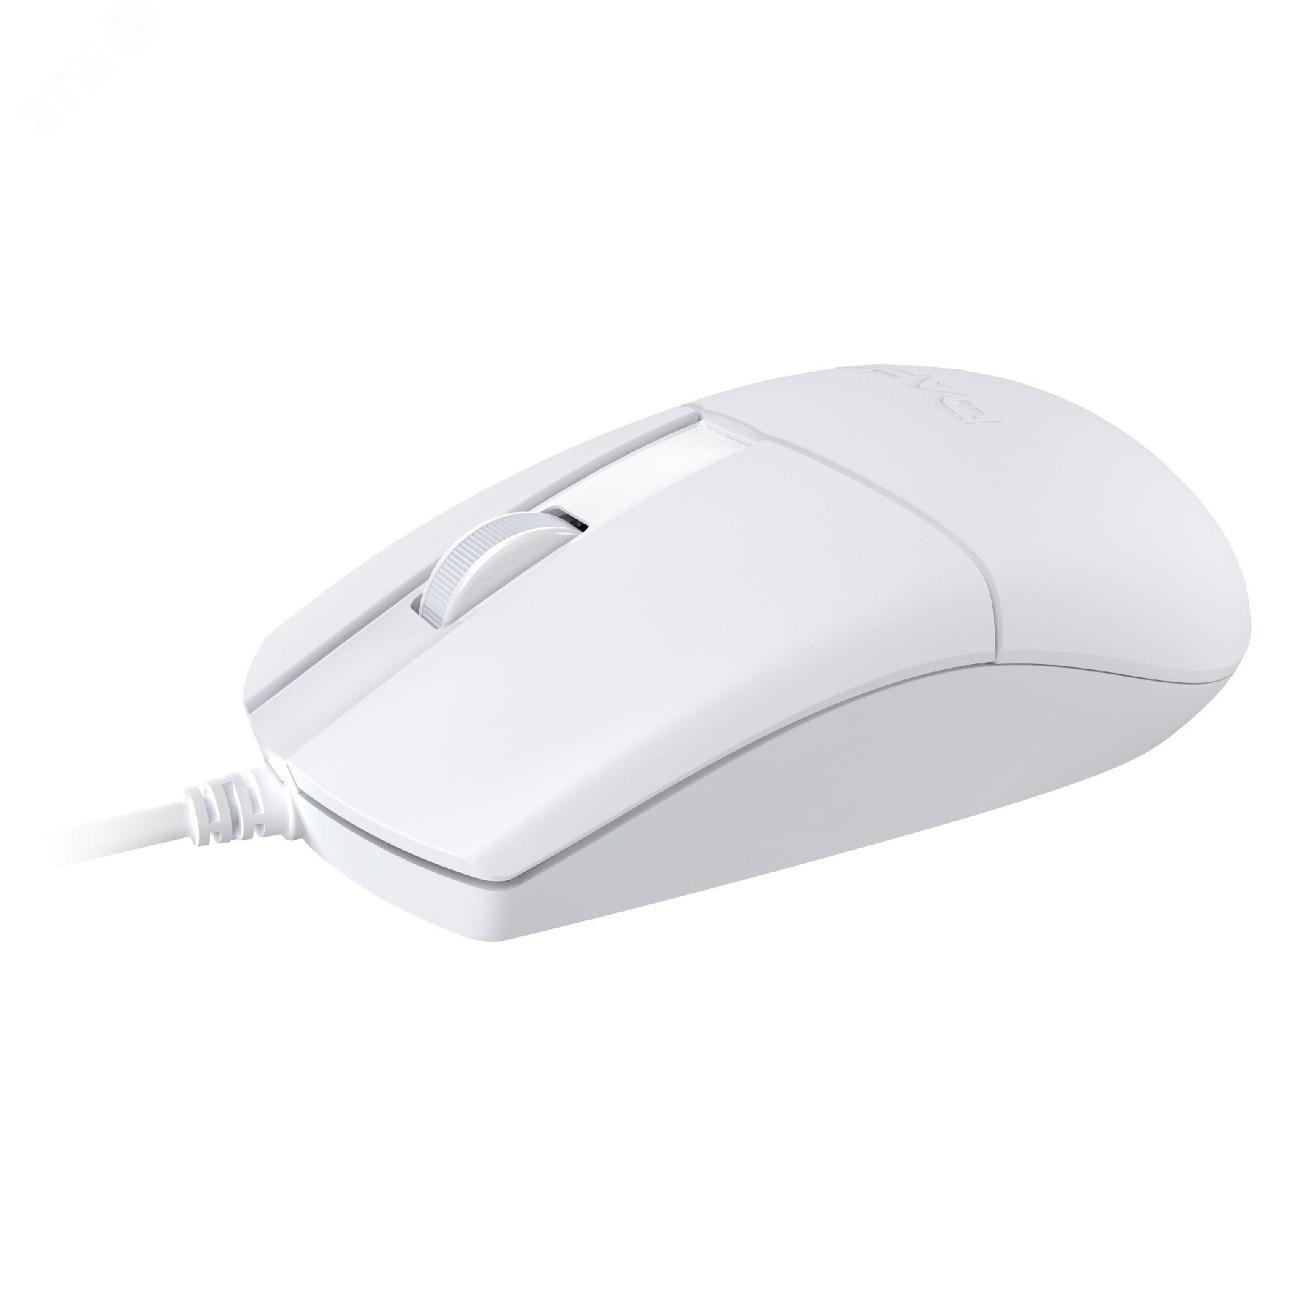 Комплект клавиатура + мышь проводной, USB белый MK185 White Dareu - превью 5